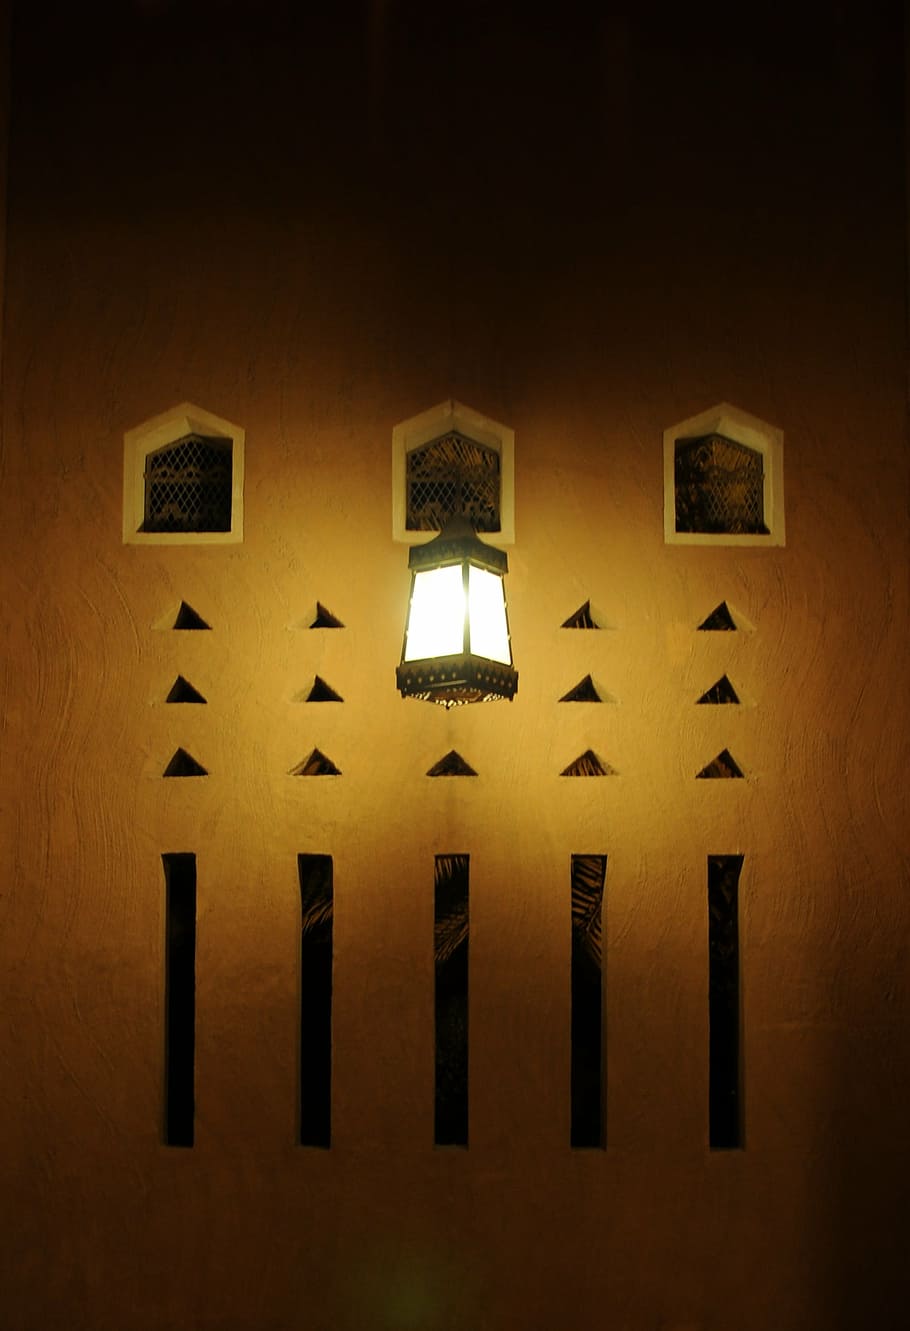 mud, old, saudi arabia, traditional, mud house, light, dark, illuminated, lighting equipment, indoors